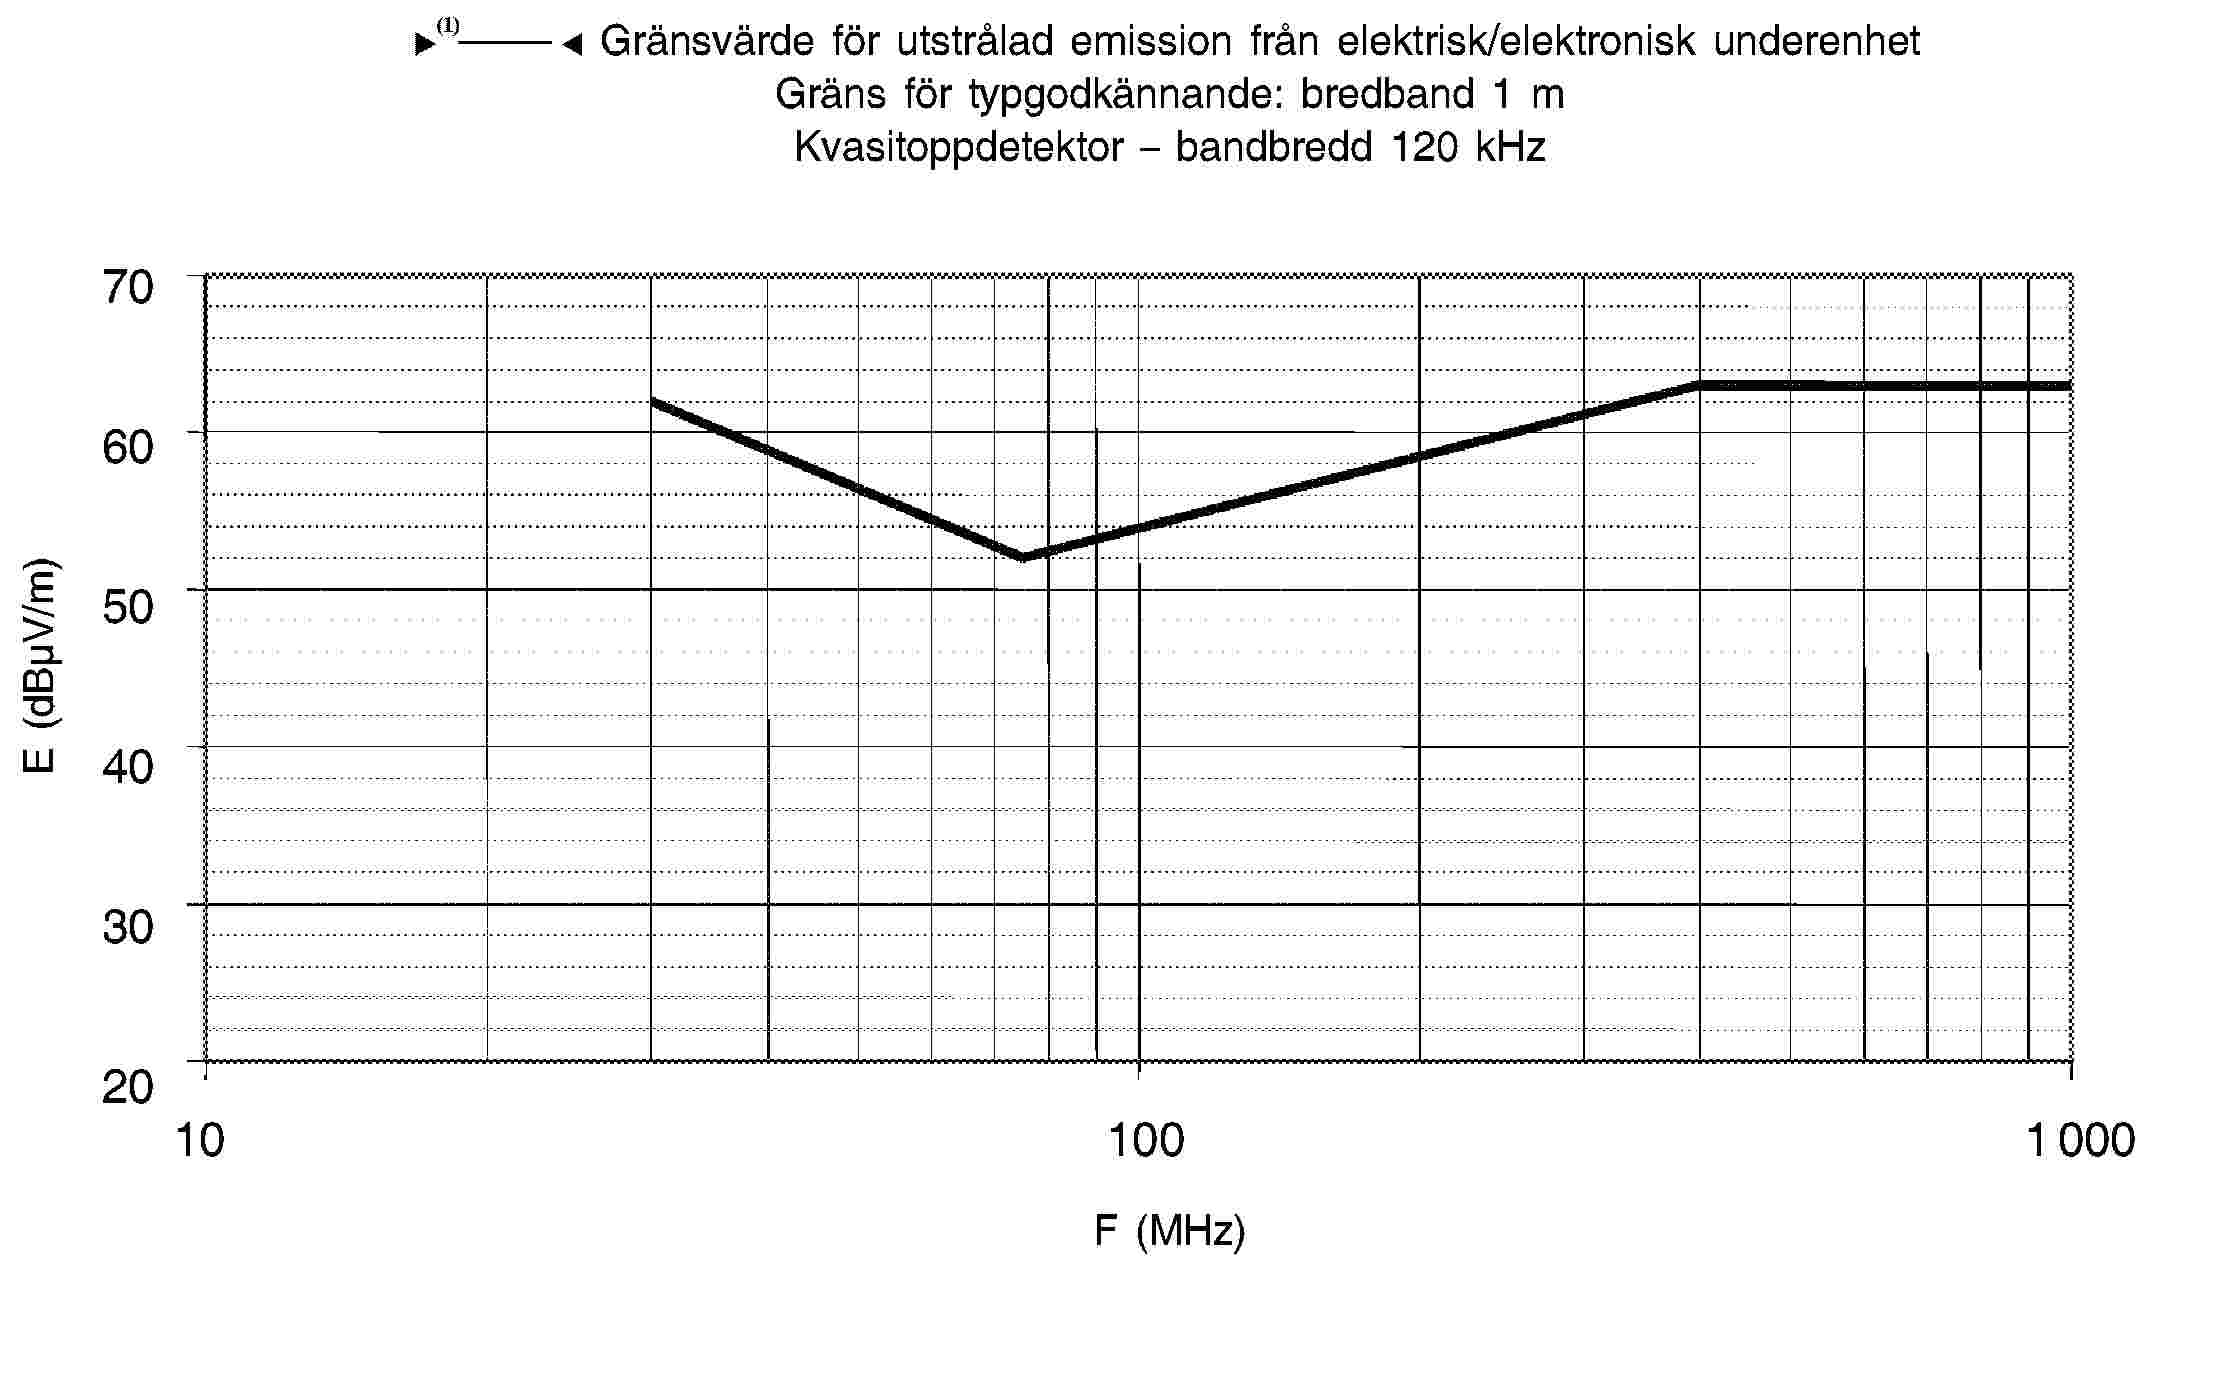 95/54/EG – Gränsvärde för utstrålad emission från elektrisk/elektronisk underenhet Gräns för typgodkännande: bredband 1 m Kvasitoppdetektor – bandbredd 120 kHz70 60 50 40 30 2010 100 1000F (MHz)E (dBμV/m)